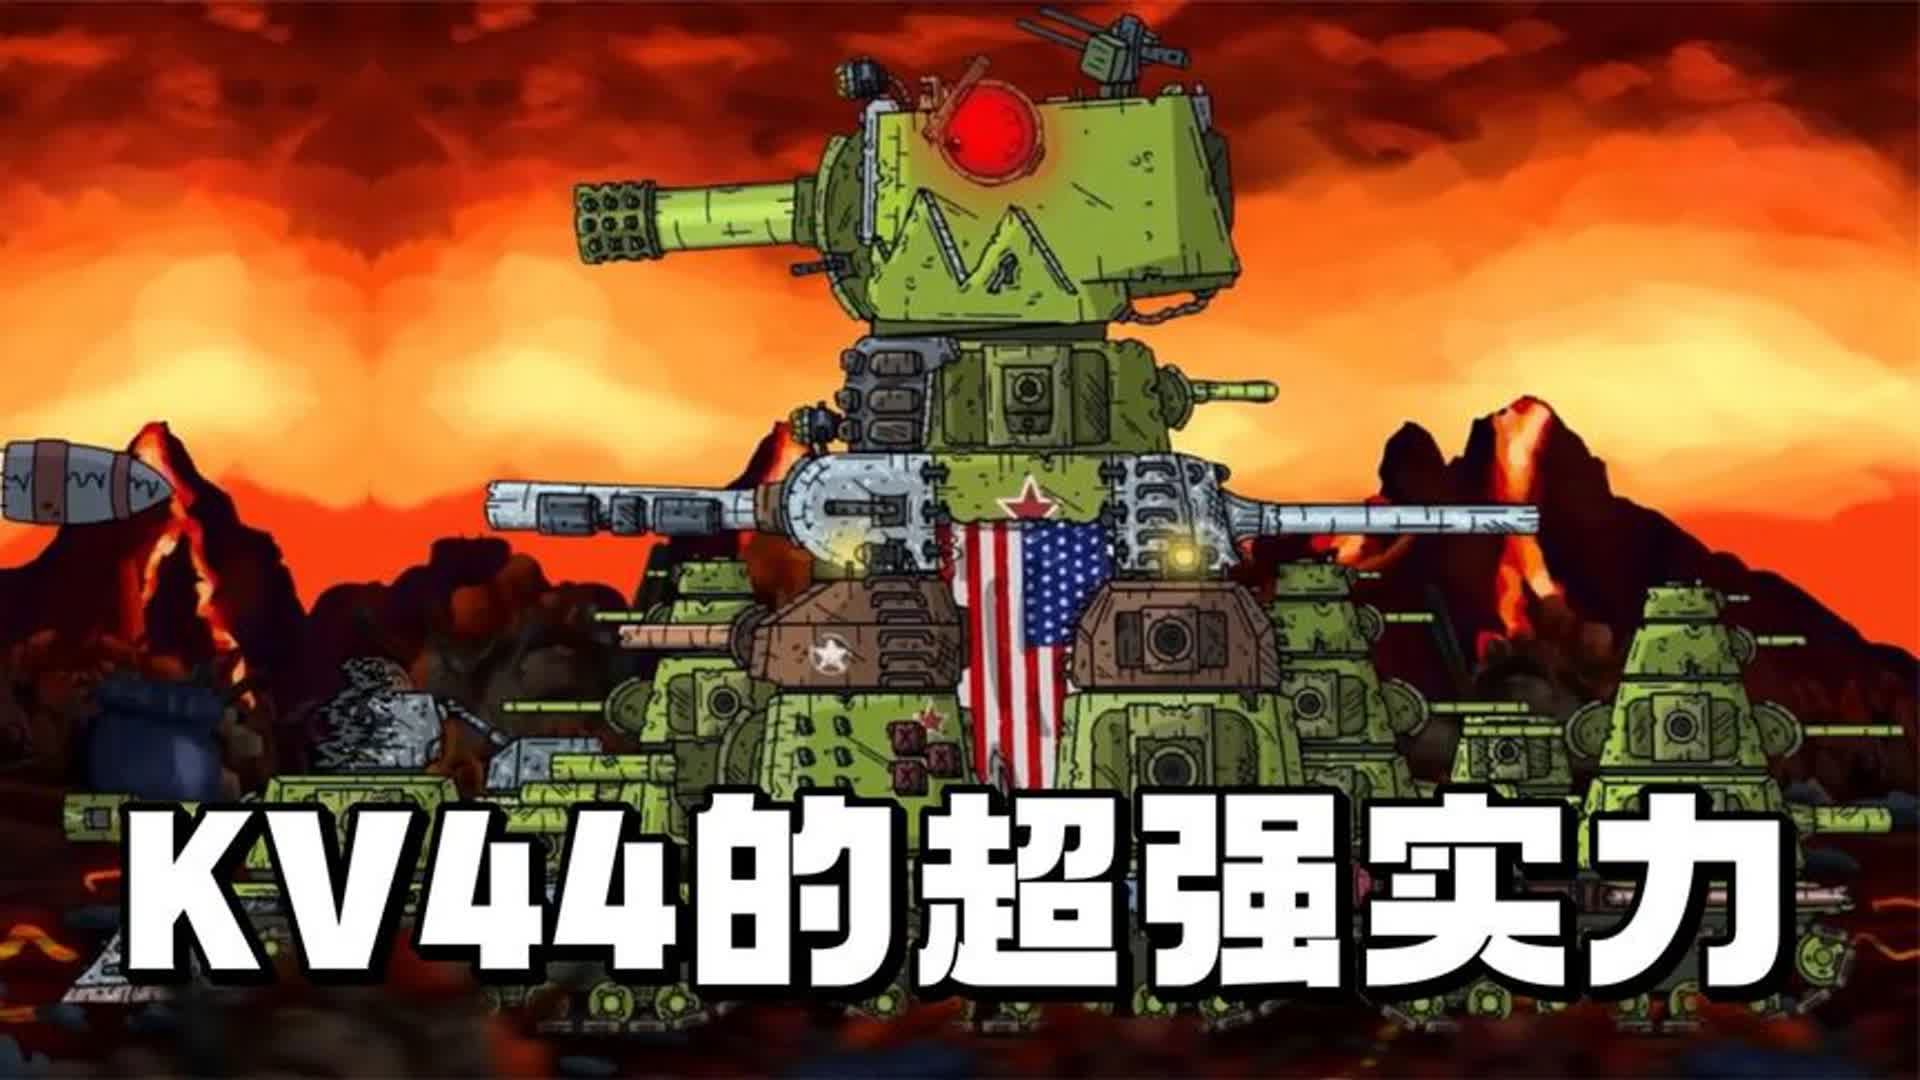 坦克世界动画:kv44的超强实力!